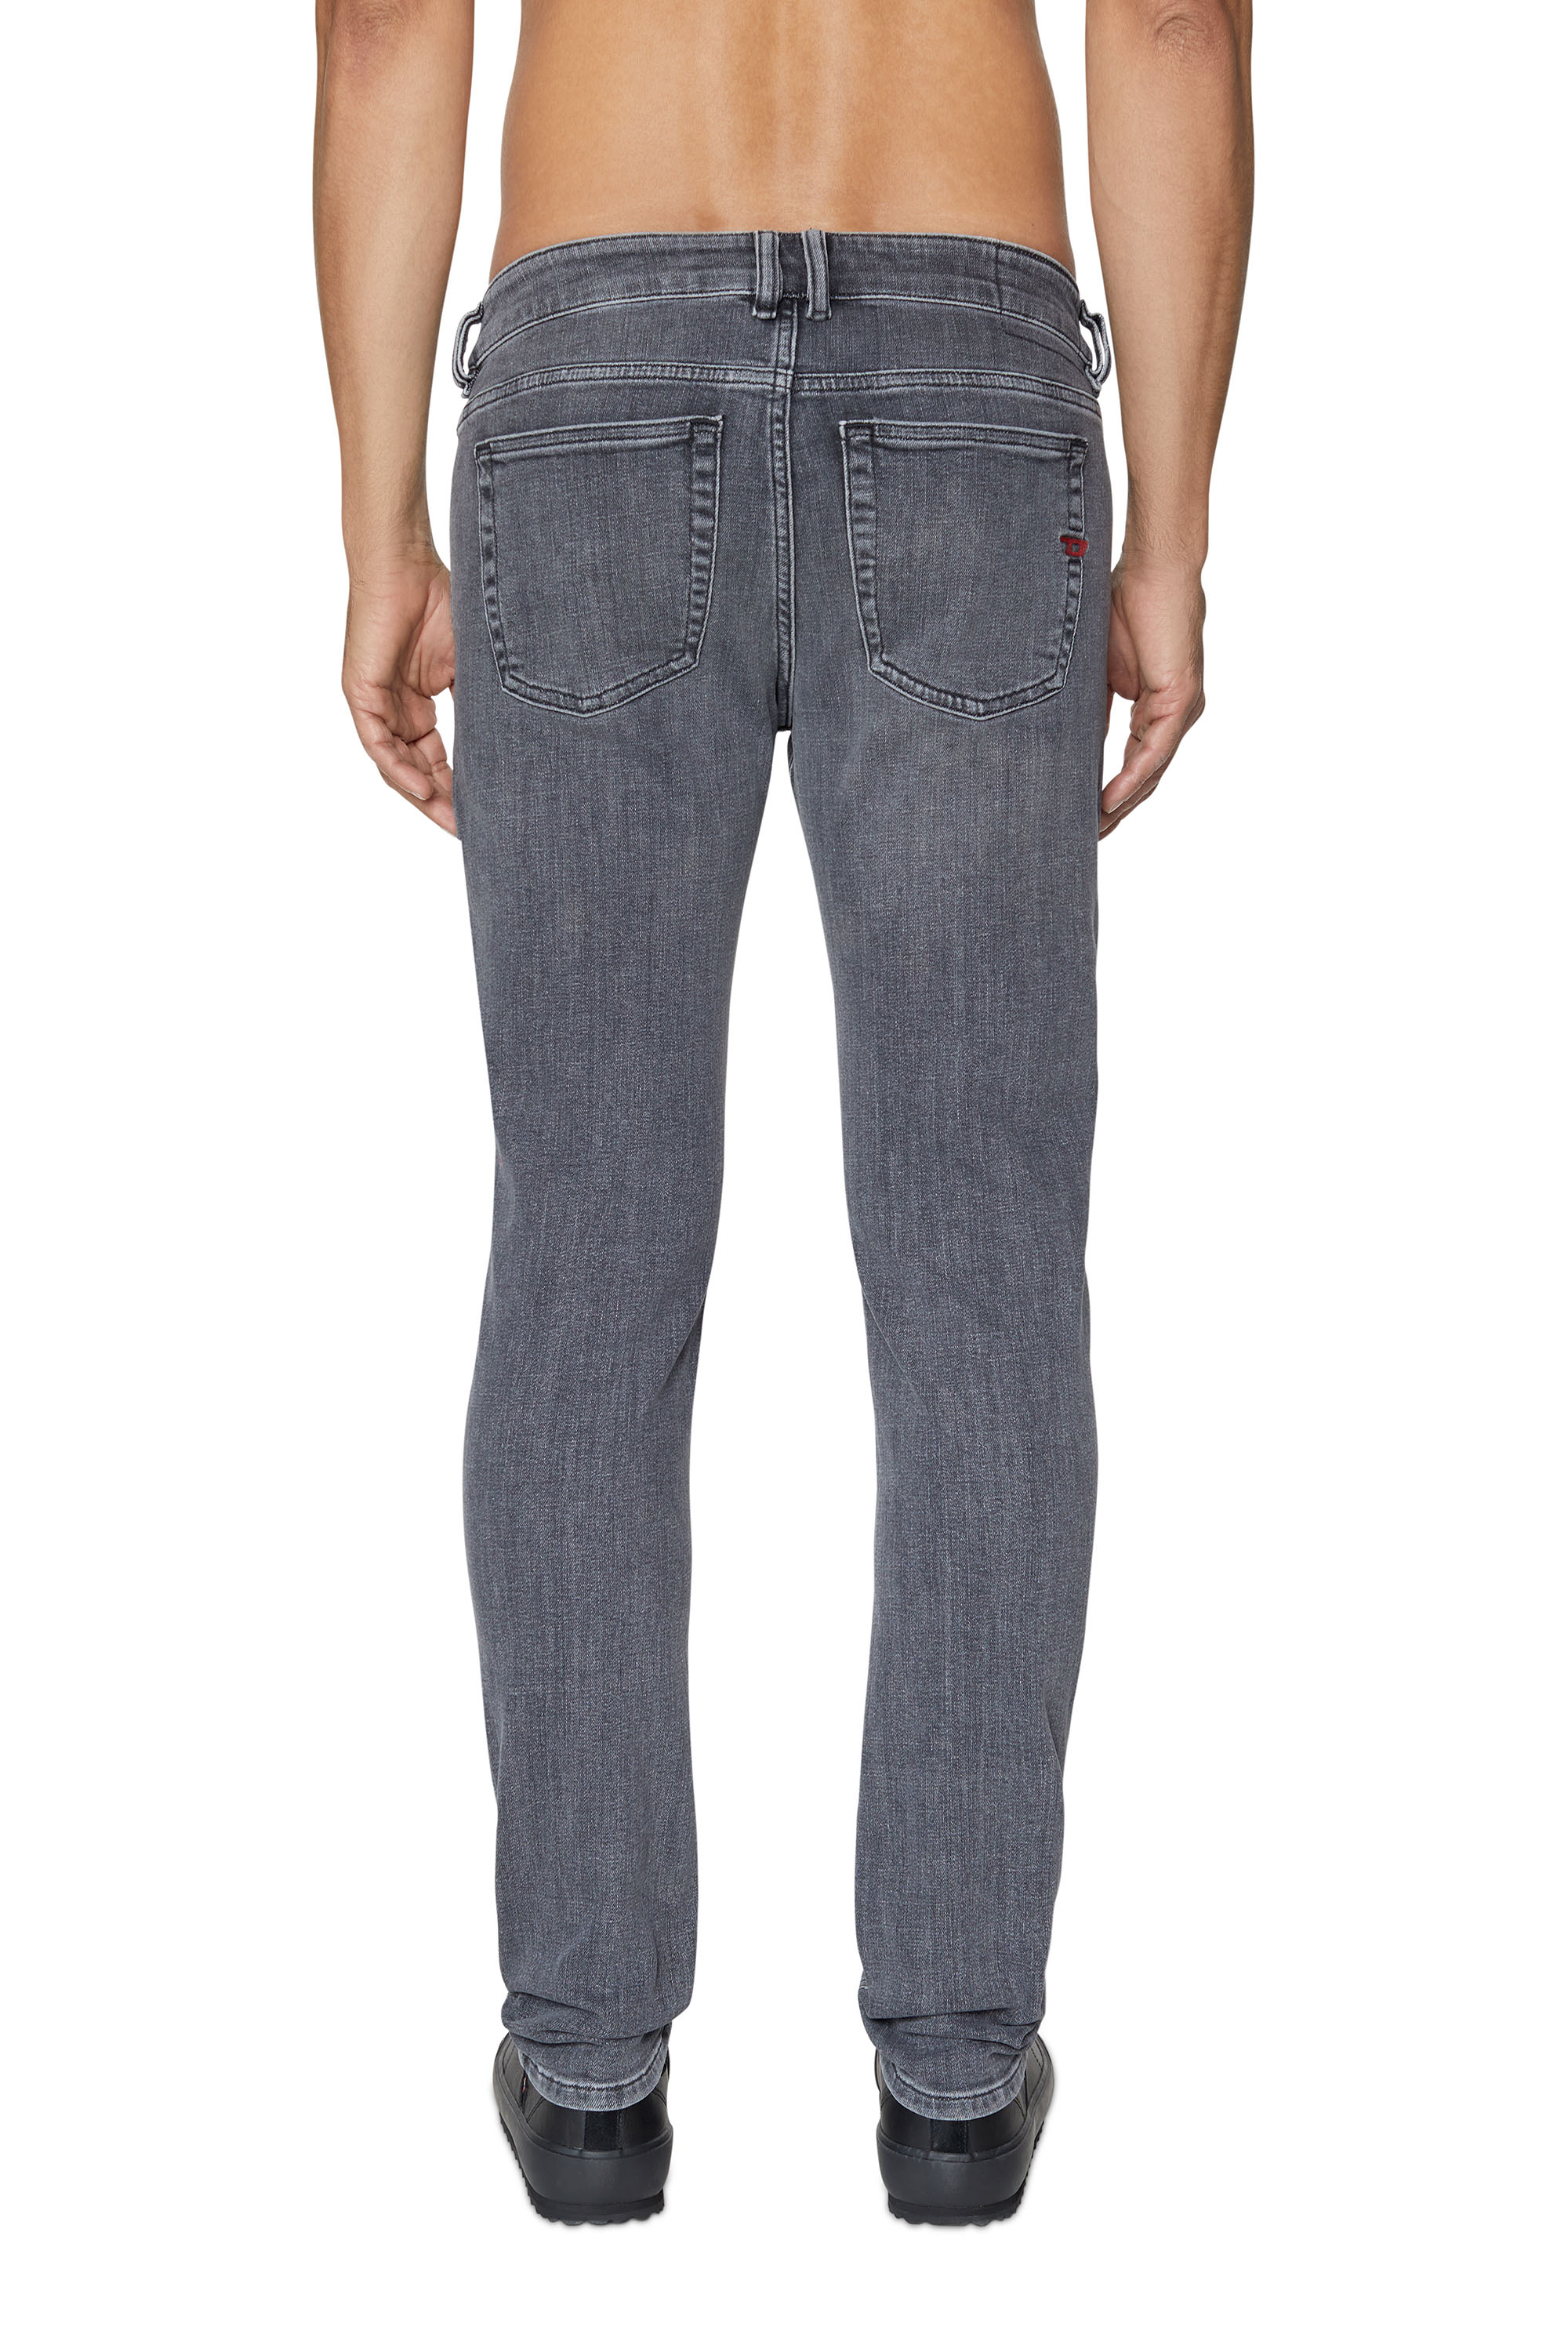 Grey DIESEL Denim 1979 Sleenker Skinny Jeans in Grey Mens Clothing Jeans Skinny jeans for Men 